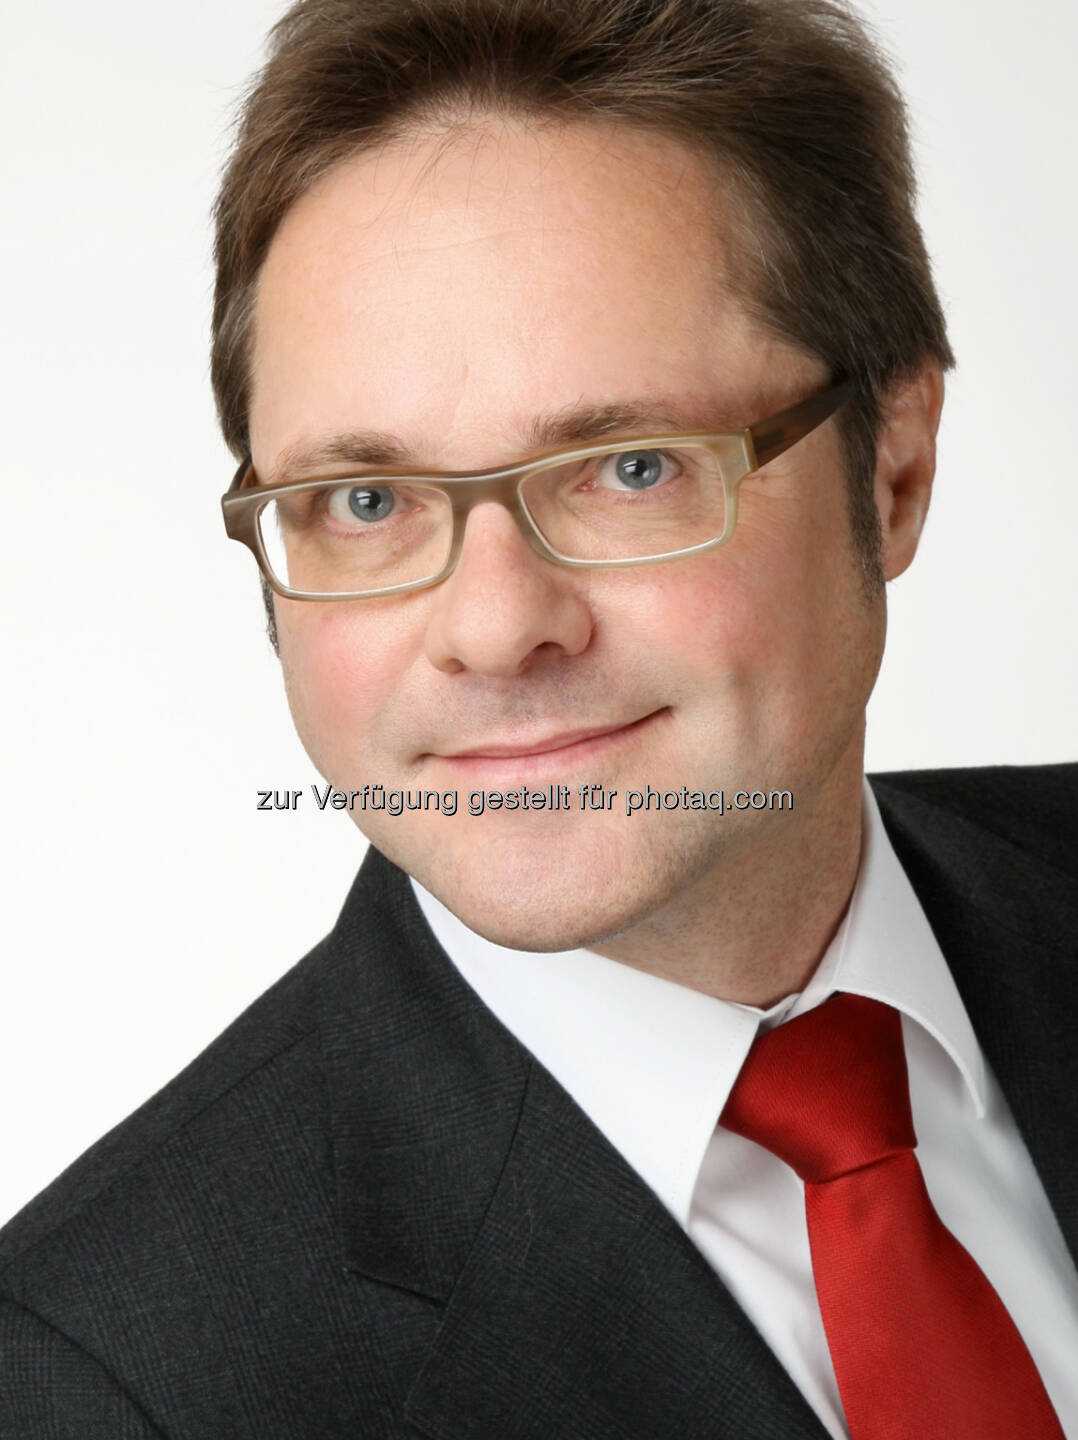 Mag. Manfred Hämmerle, Eigentümer und Geschäftsführer, imh GmbH - imh Gmbh: imh: Der Weiterbildungsanbieter IIR arbeitet unter neuem Namen (Fotograf: Foto Schuster / Fotocredit: IIR GmbH)